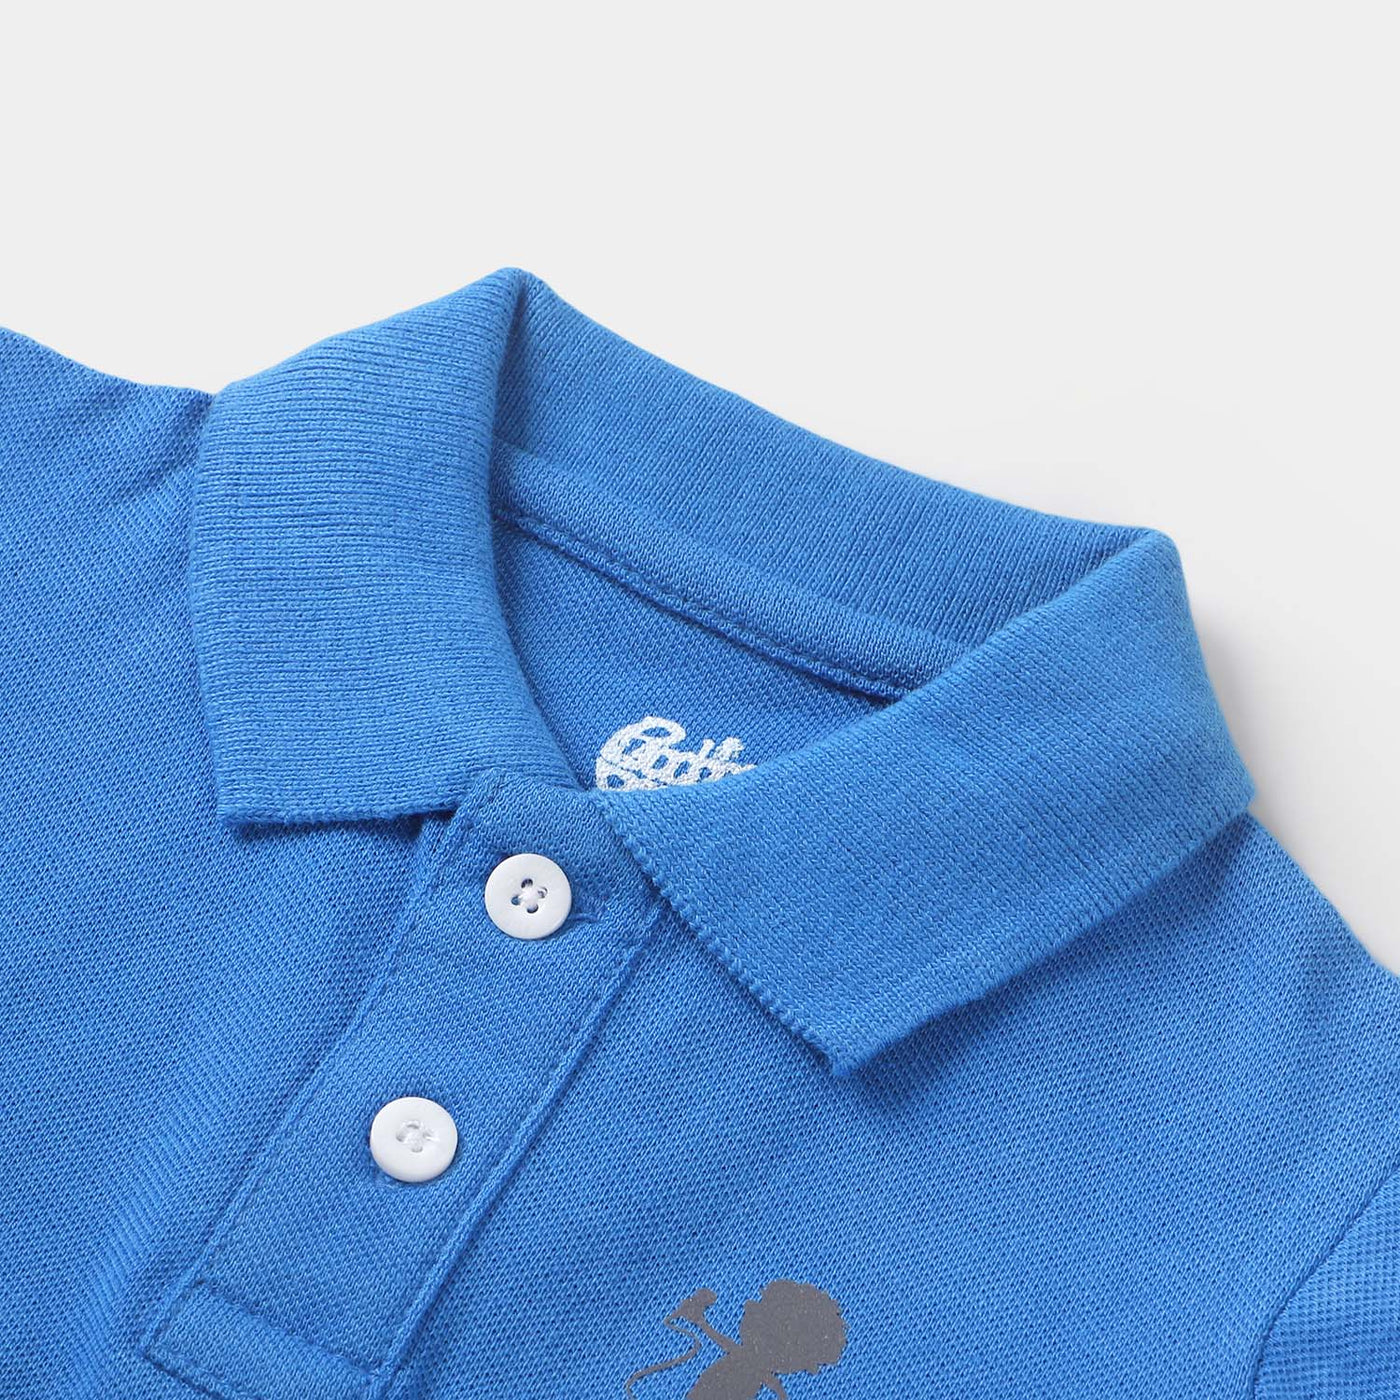 Infant Boys Polo T-Shirt Basic  - Indigo/blue